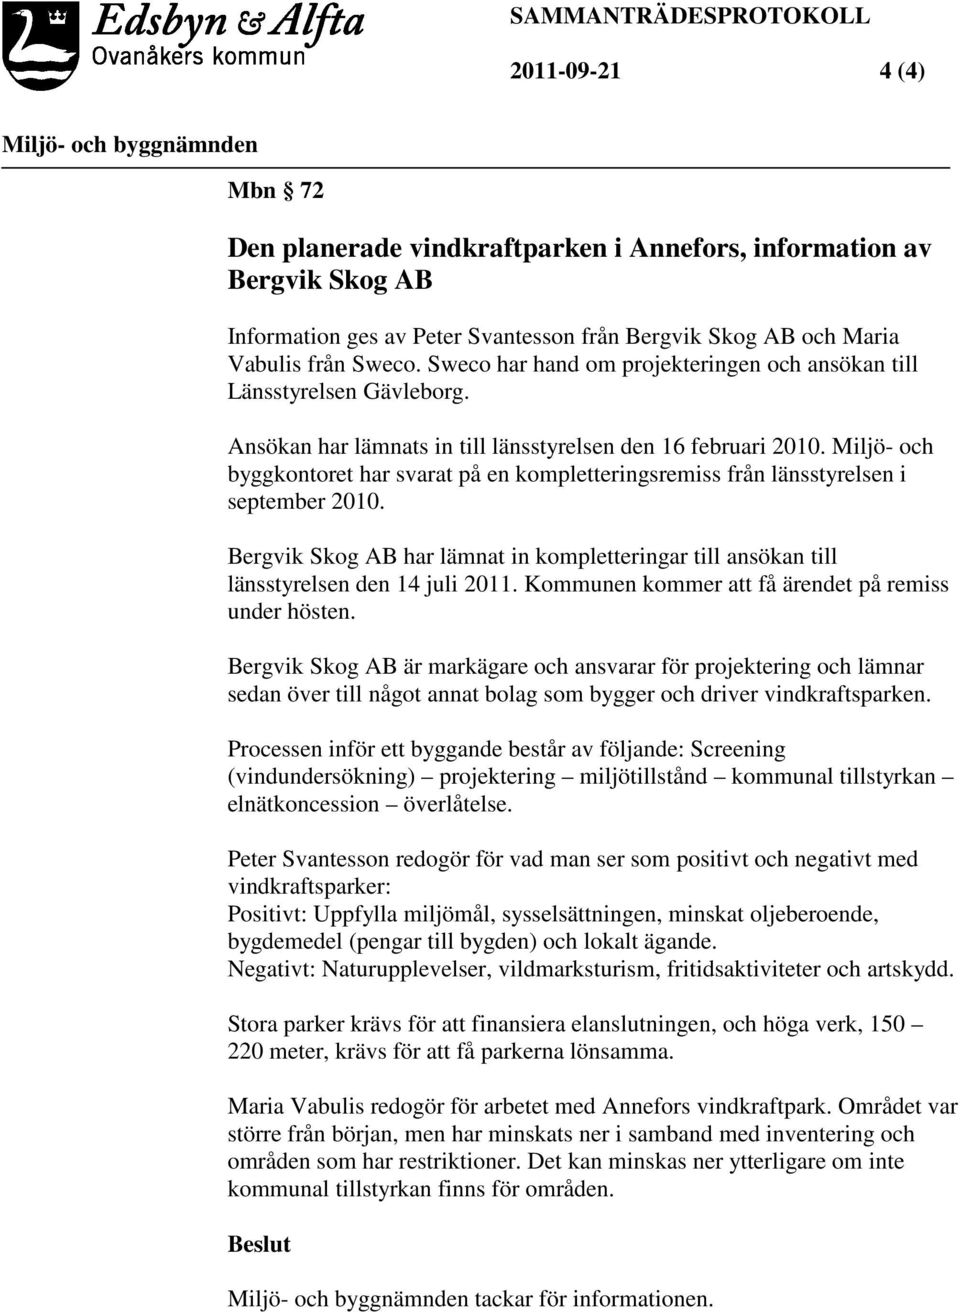 Miljö- och byggkontoret har svarat på en kompletteringsremiss från länsstyrelsen i september 2010. Bergvik Skog AB har lämnat in kompletteringar till ansökan till länsstyrelsen den 14 juli 2011.